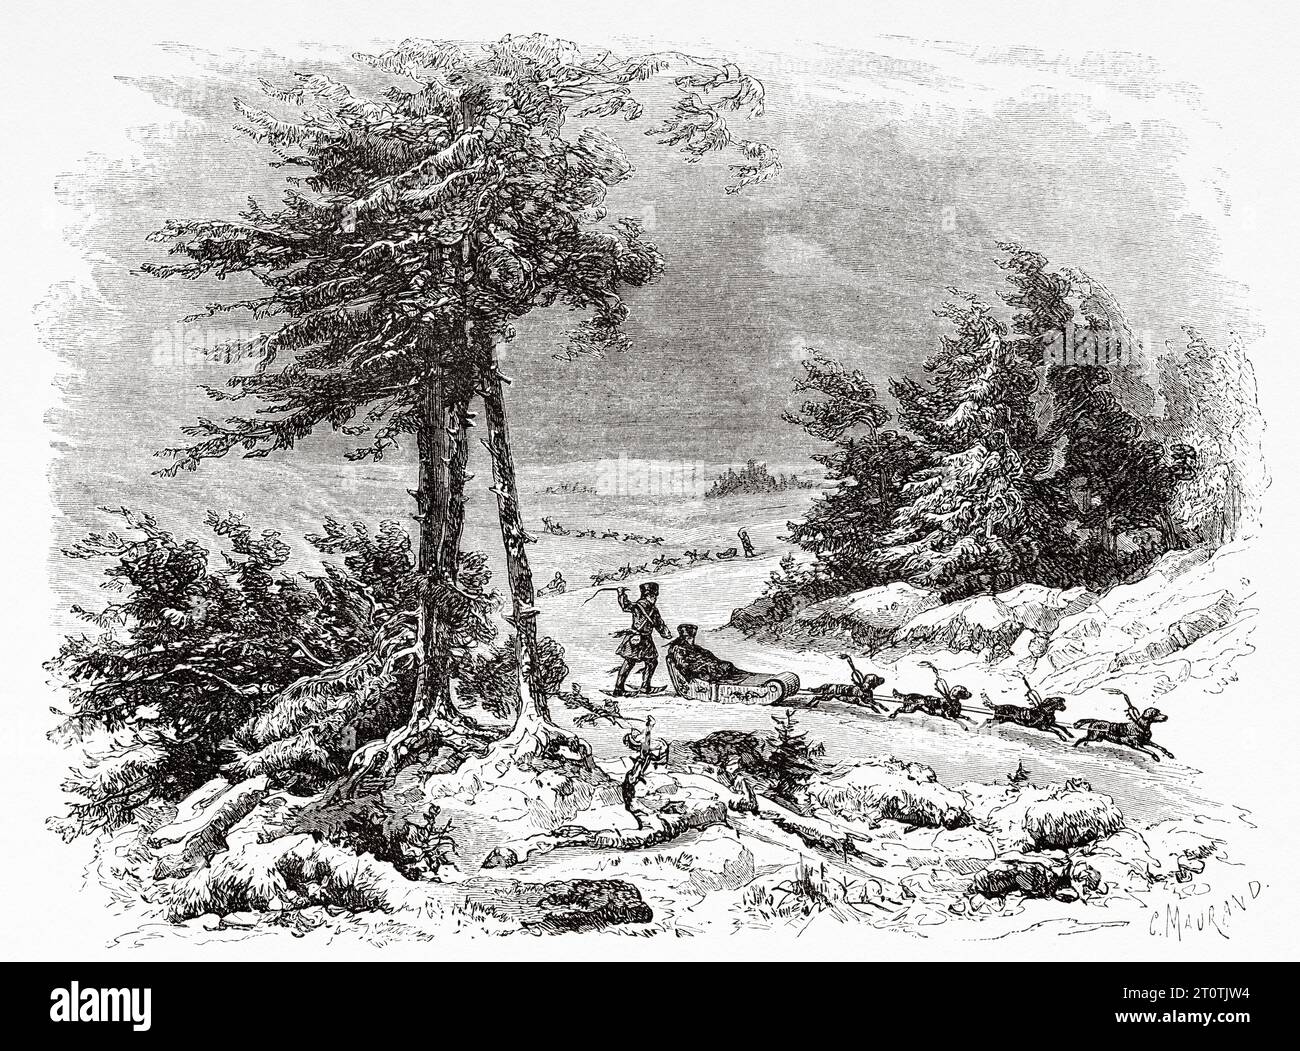 Traîneau à chiens guidé par les Tungus. Russie. Gravure ancienne du 19e siècle du Tour du monde 1860 Banque D'Images